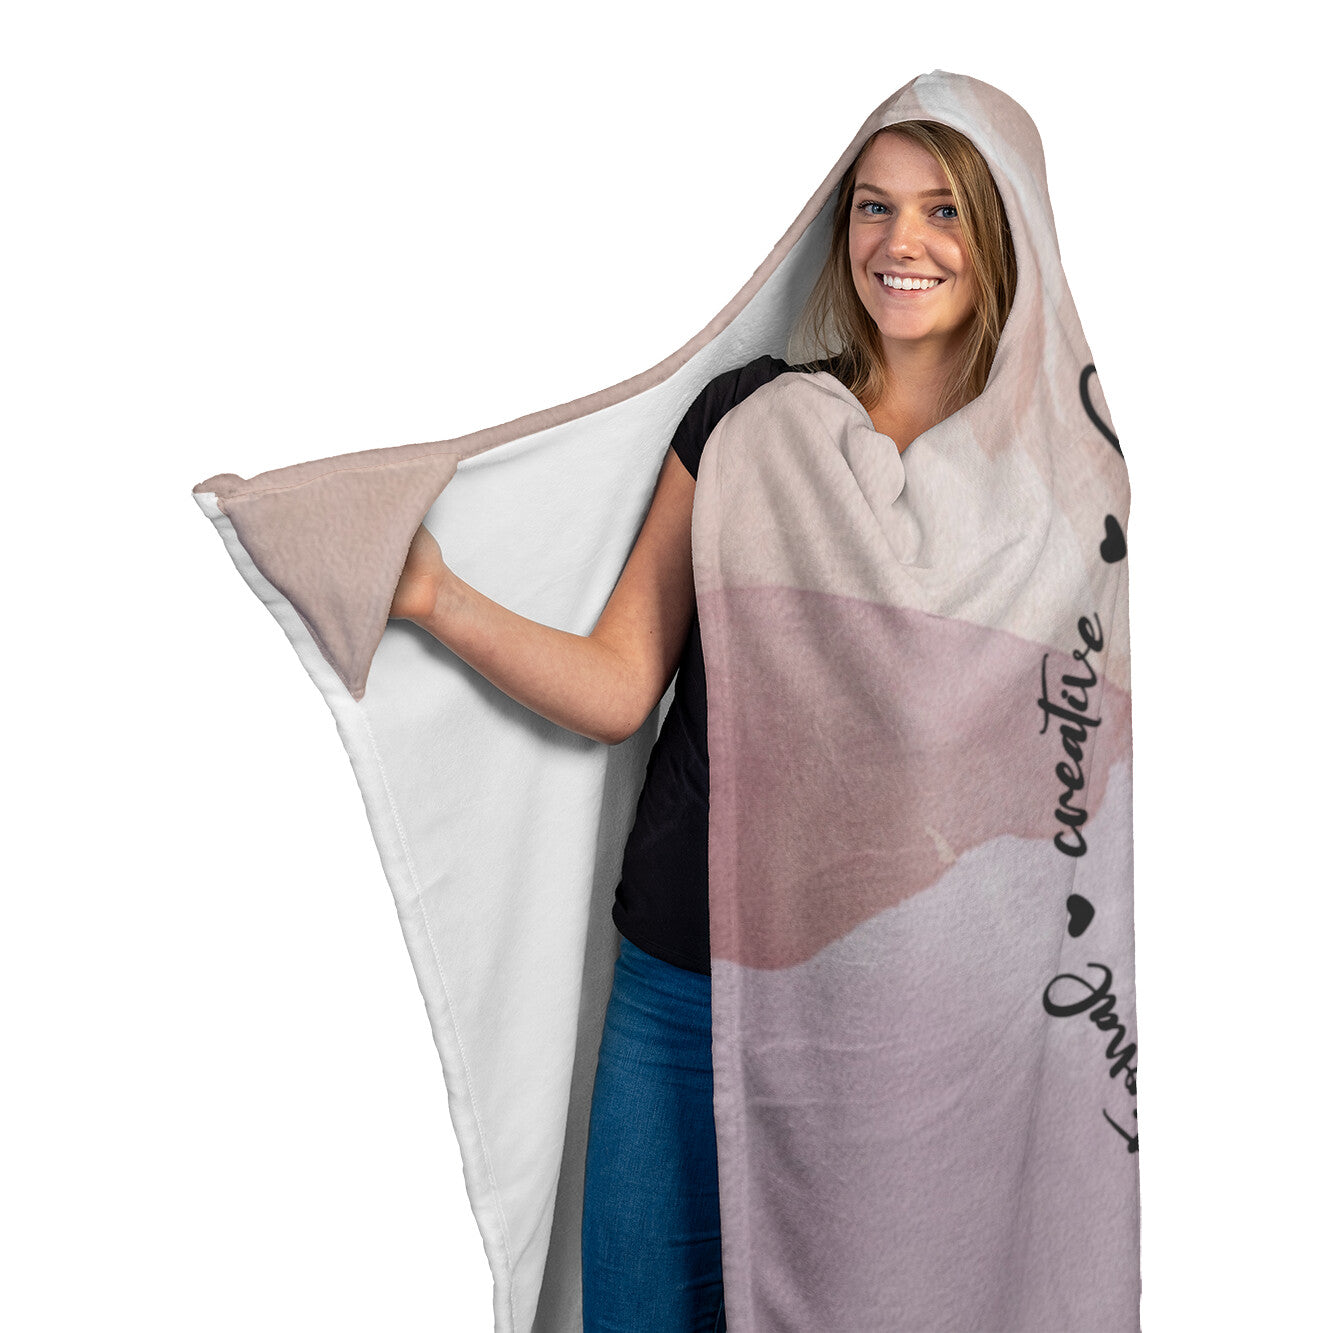 Cancer Zodiac Hooded Blanket